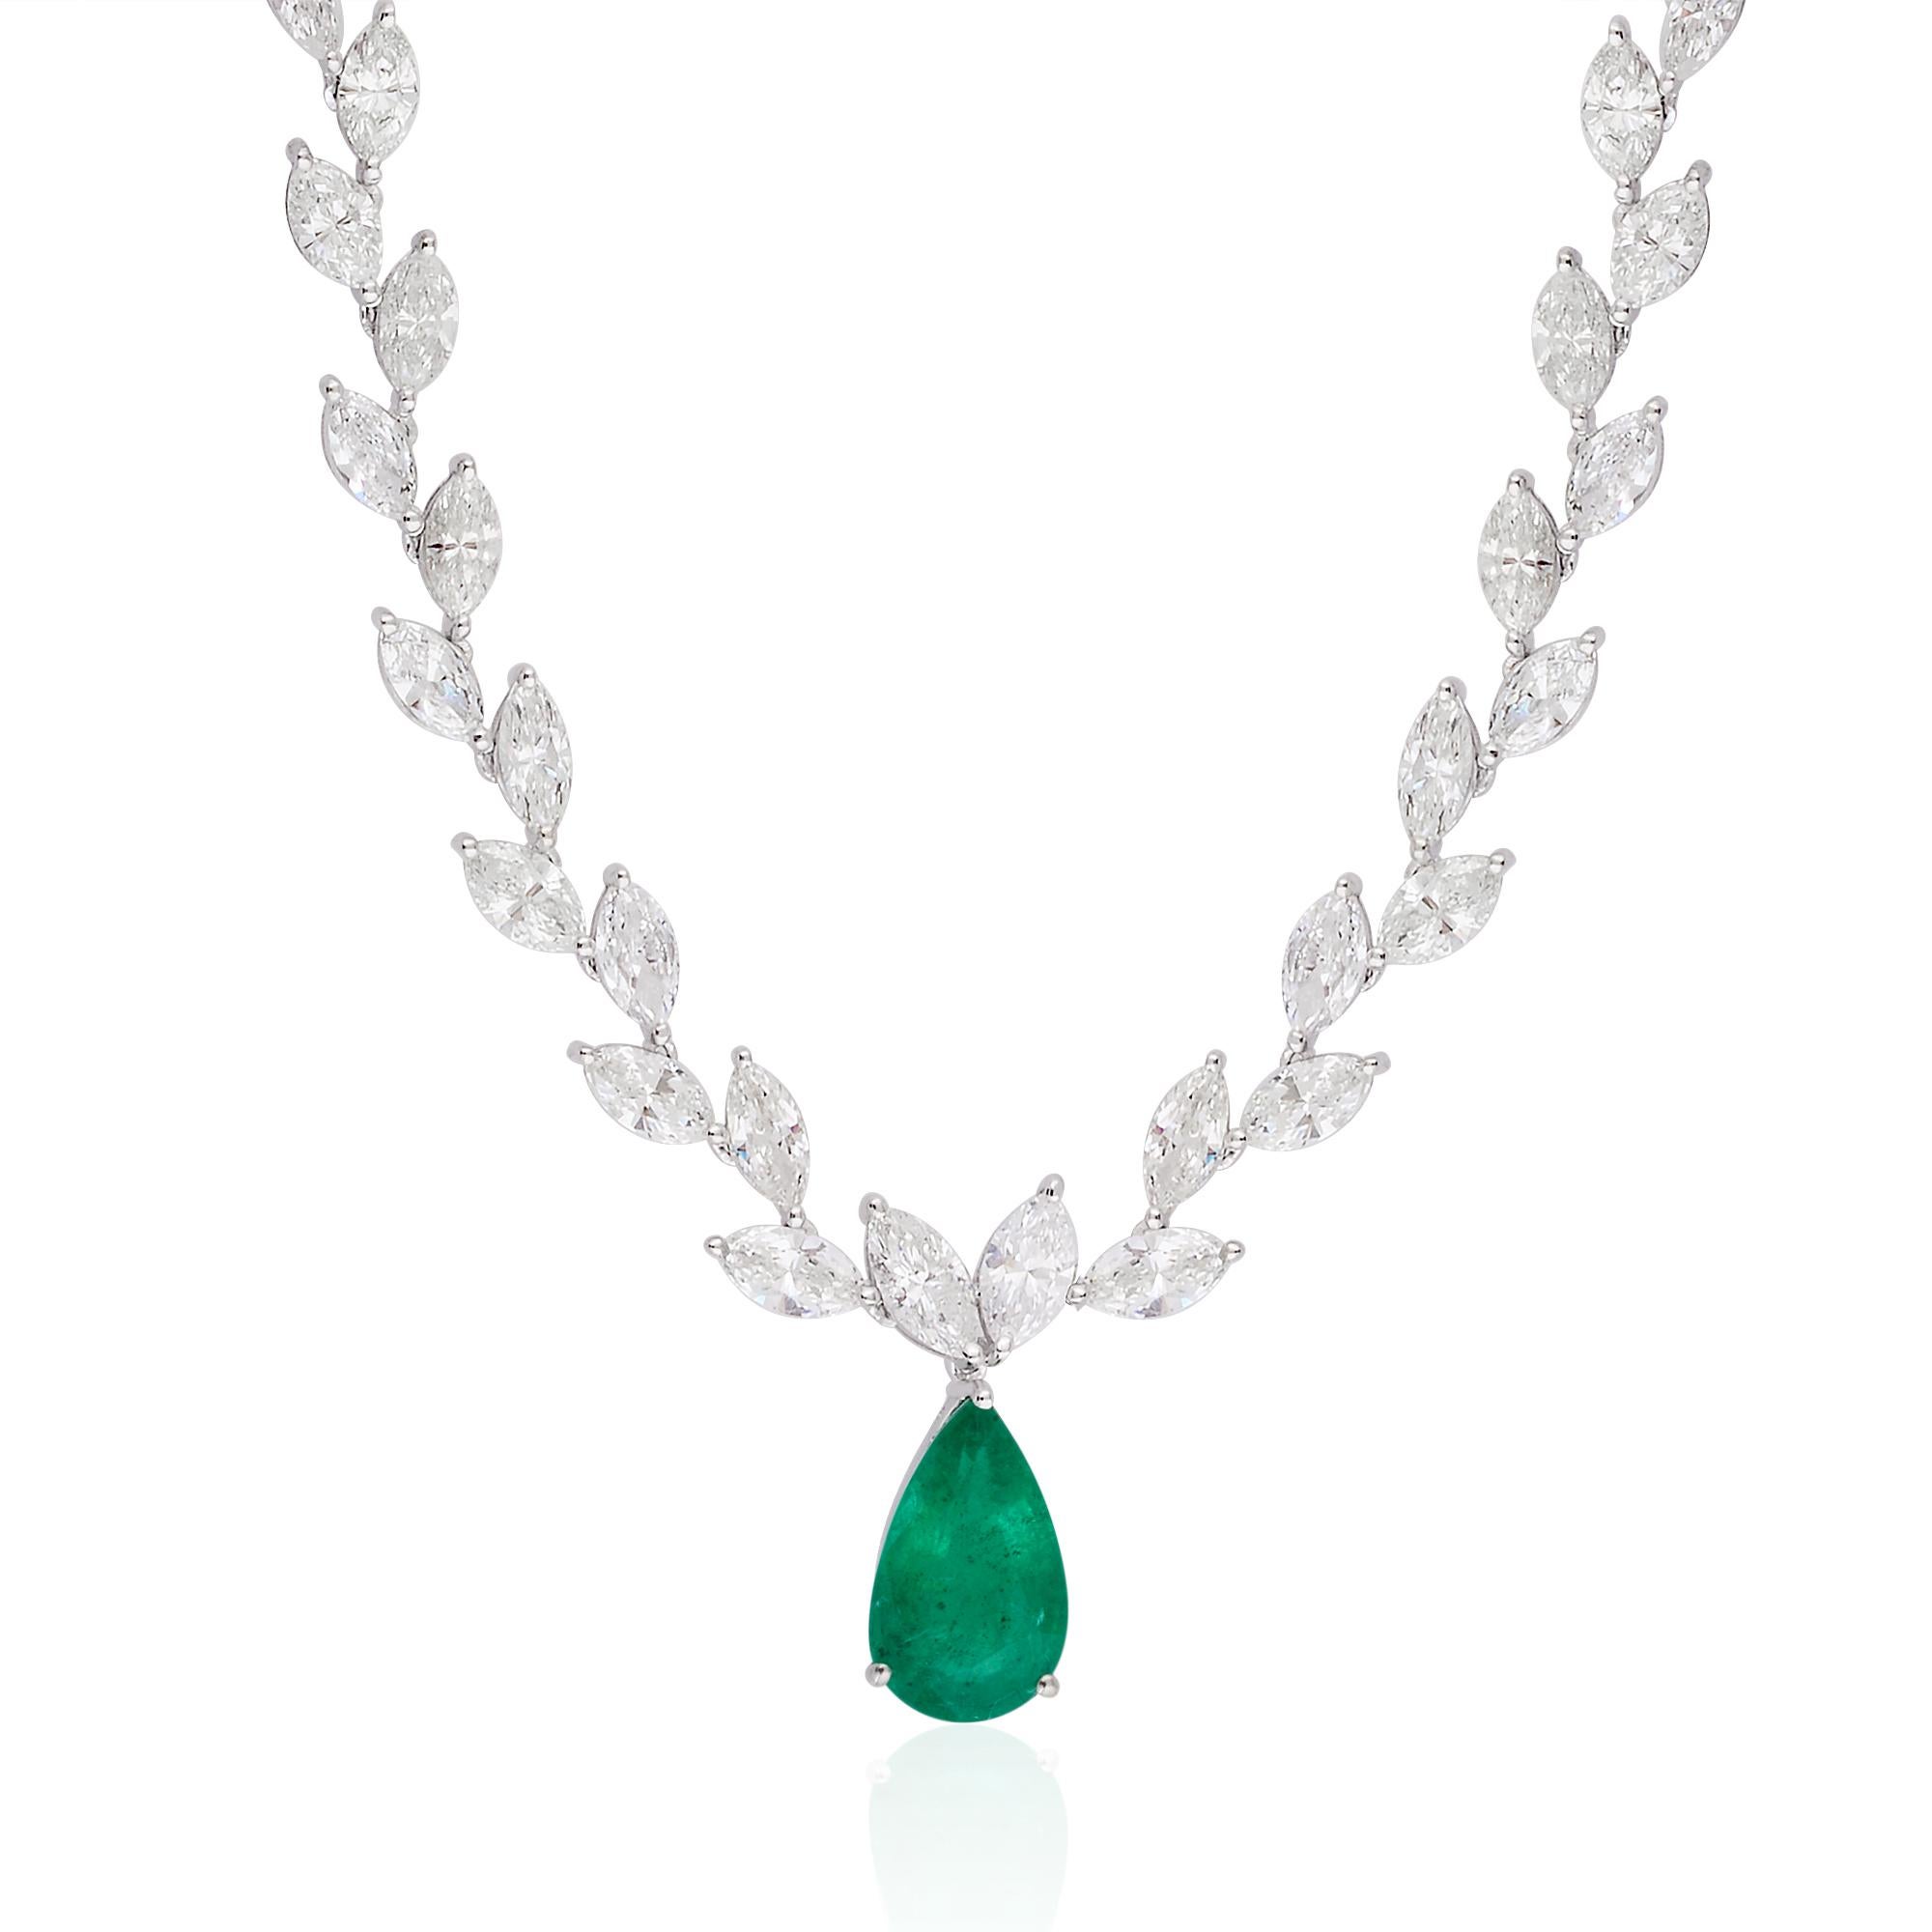 Ajoutez de la vivacité à votre look glamour en portant ce collier de Spectrum Jewels. Ce collier, dont le design ethnique a été réalisé à la main, est orné d'émeraudes pour un effet plus féminin. Portez ce collier en or blanc 14 carats avec vos plus